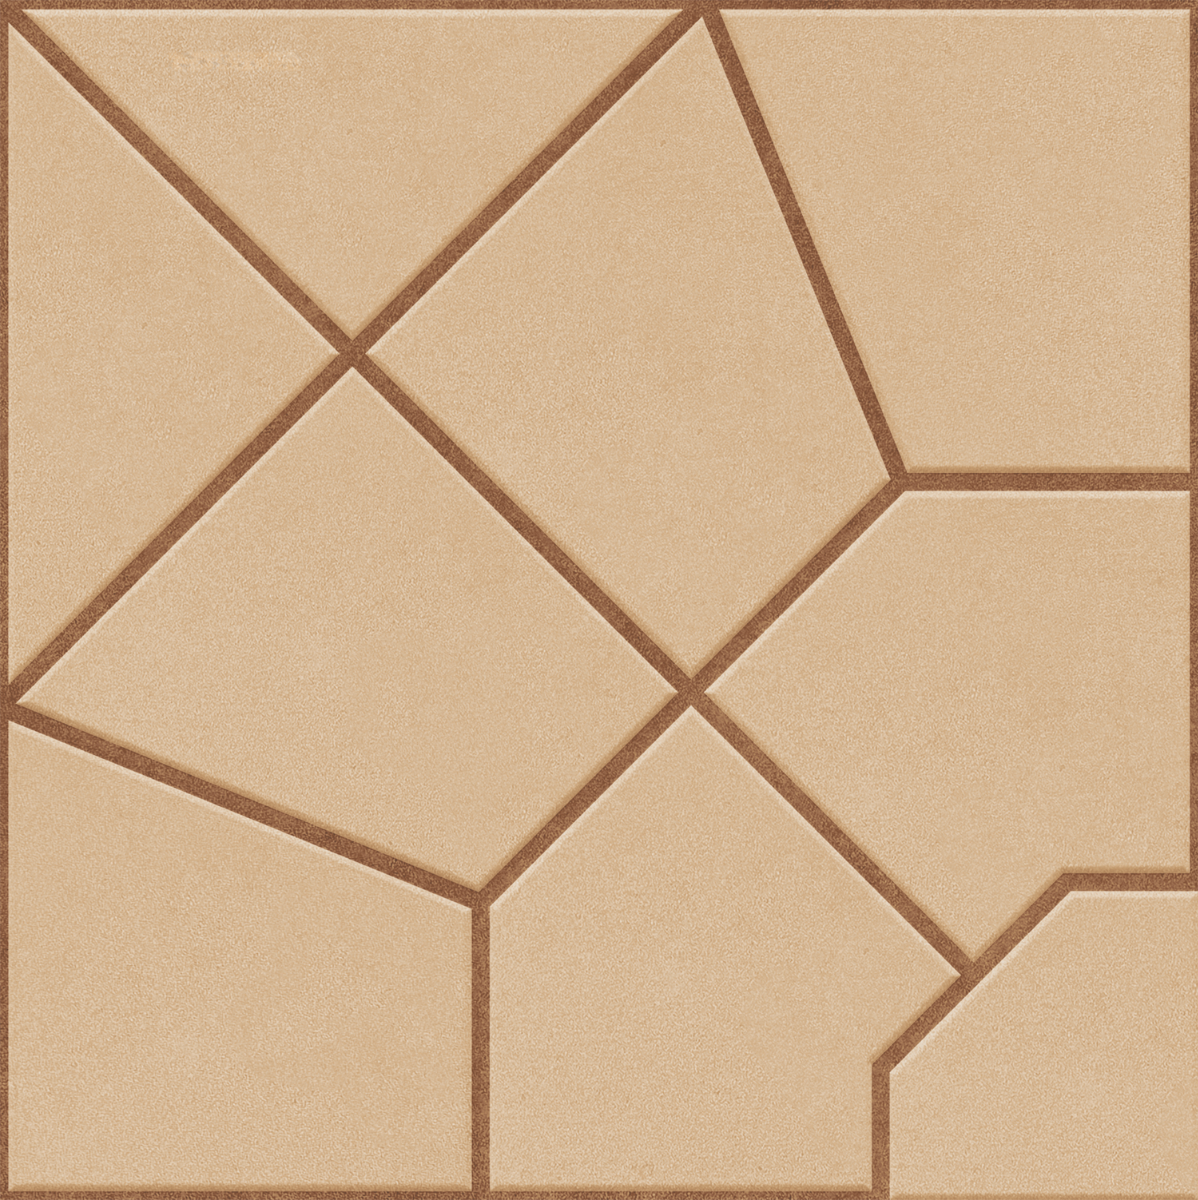 Hexagonal Tiles for Balcony Tiles, Parking Tiles, Outdoor Tiles, Terrace Tiles, Porch Tiles, Pathway Tiles, Bar Tiles, High Traffic Tiles, Bar/Restaurant, Outdoor Area, Outdoor/Terrace, Porch/Parking